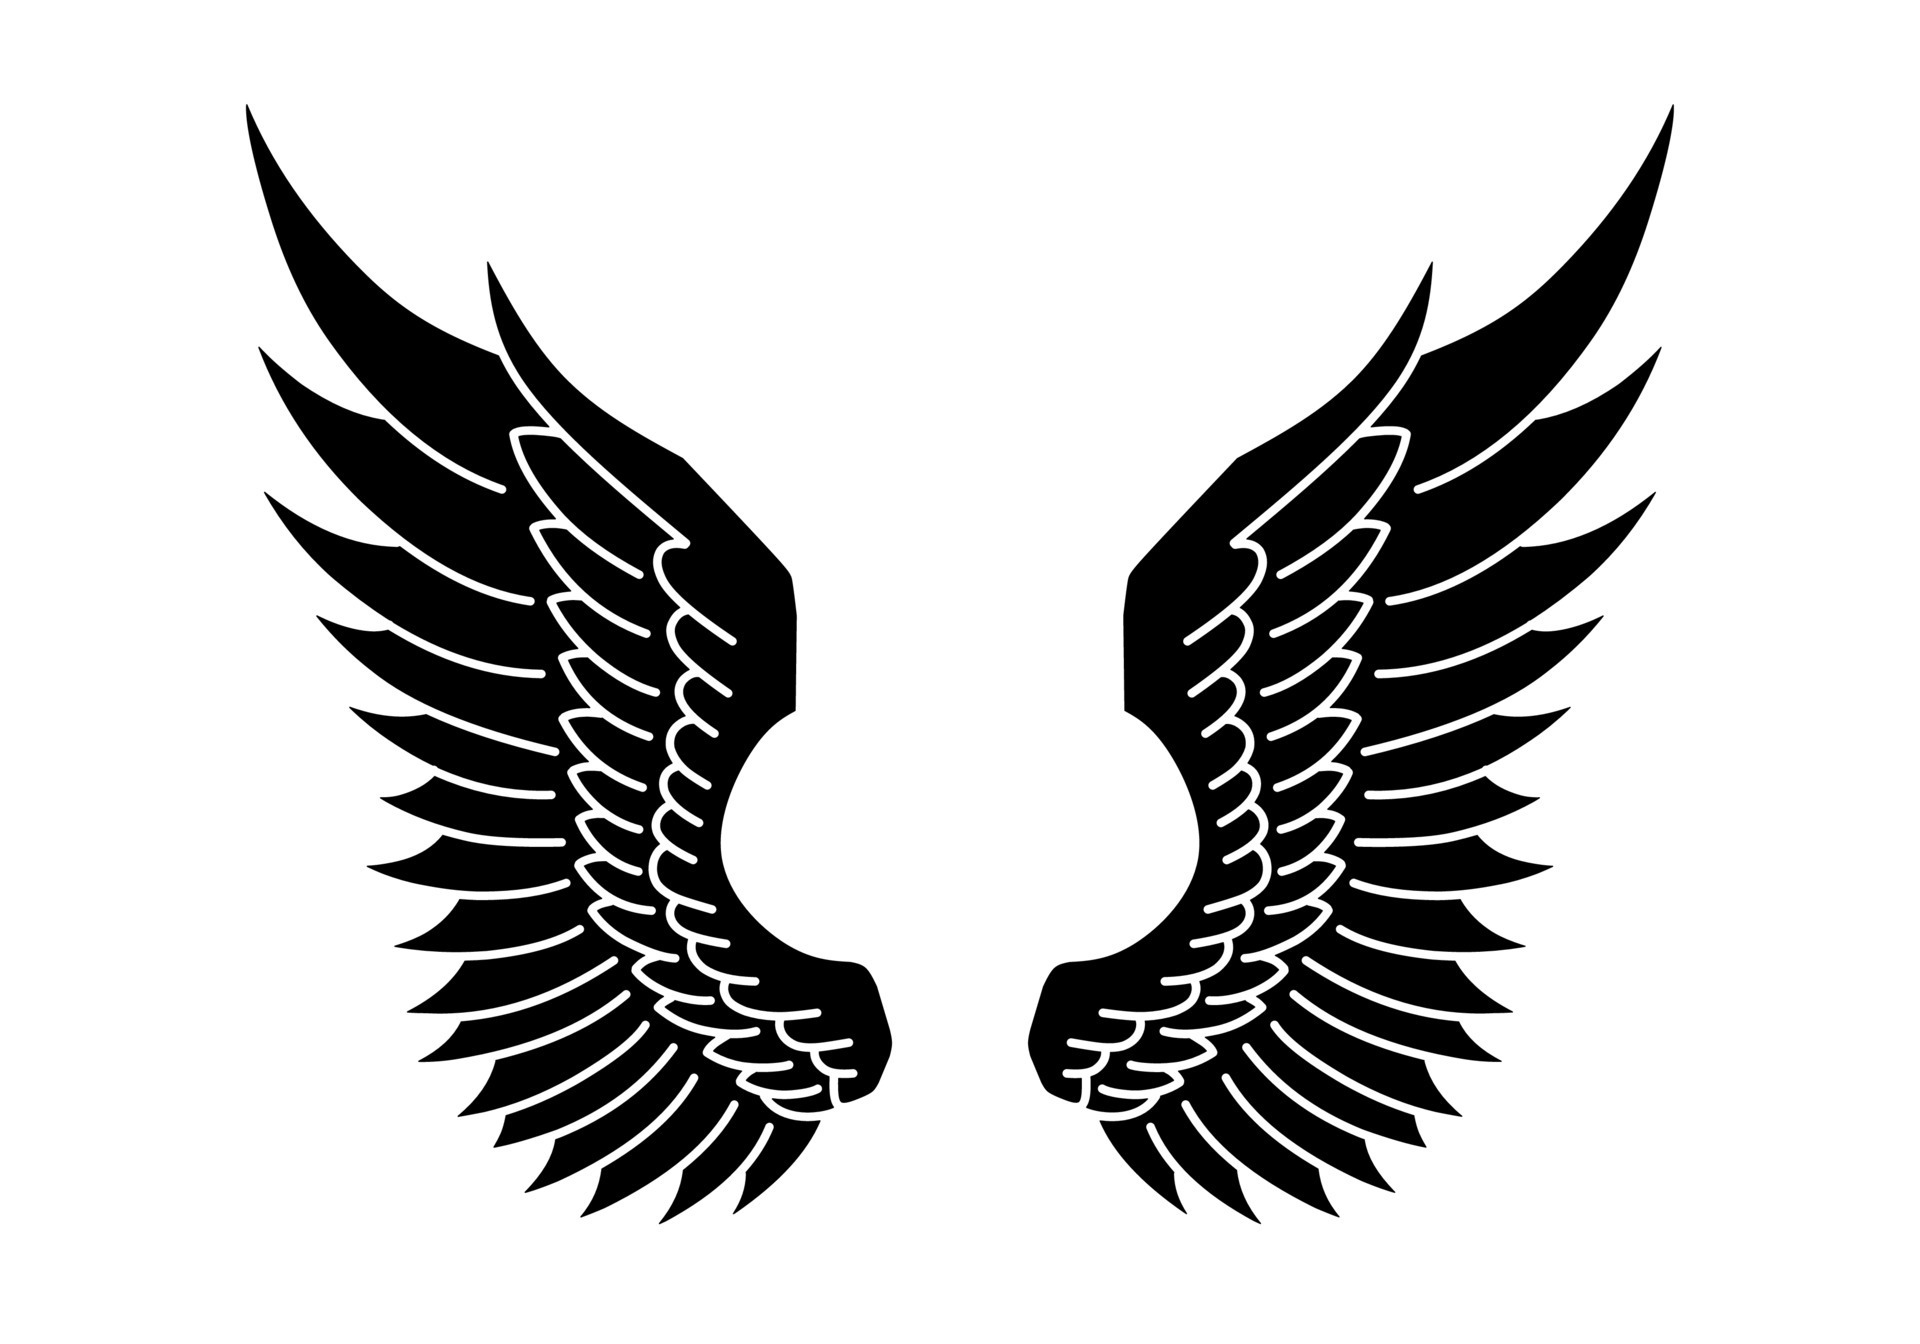 free vector angel wings 15737054 Vector Art at Vecteezy